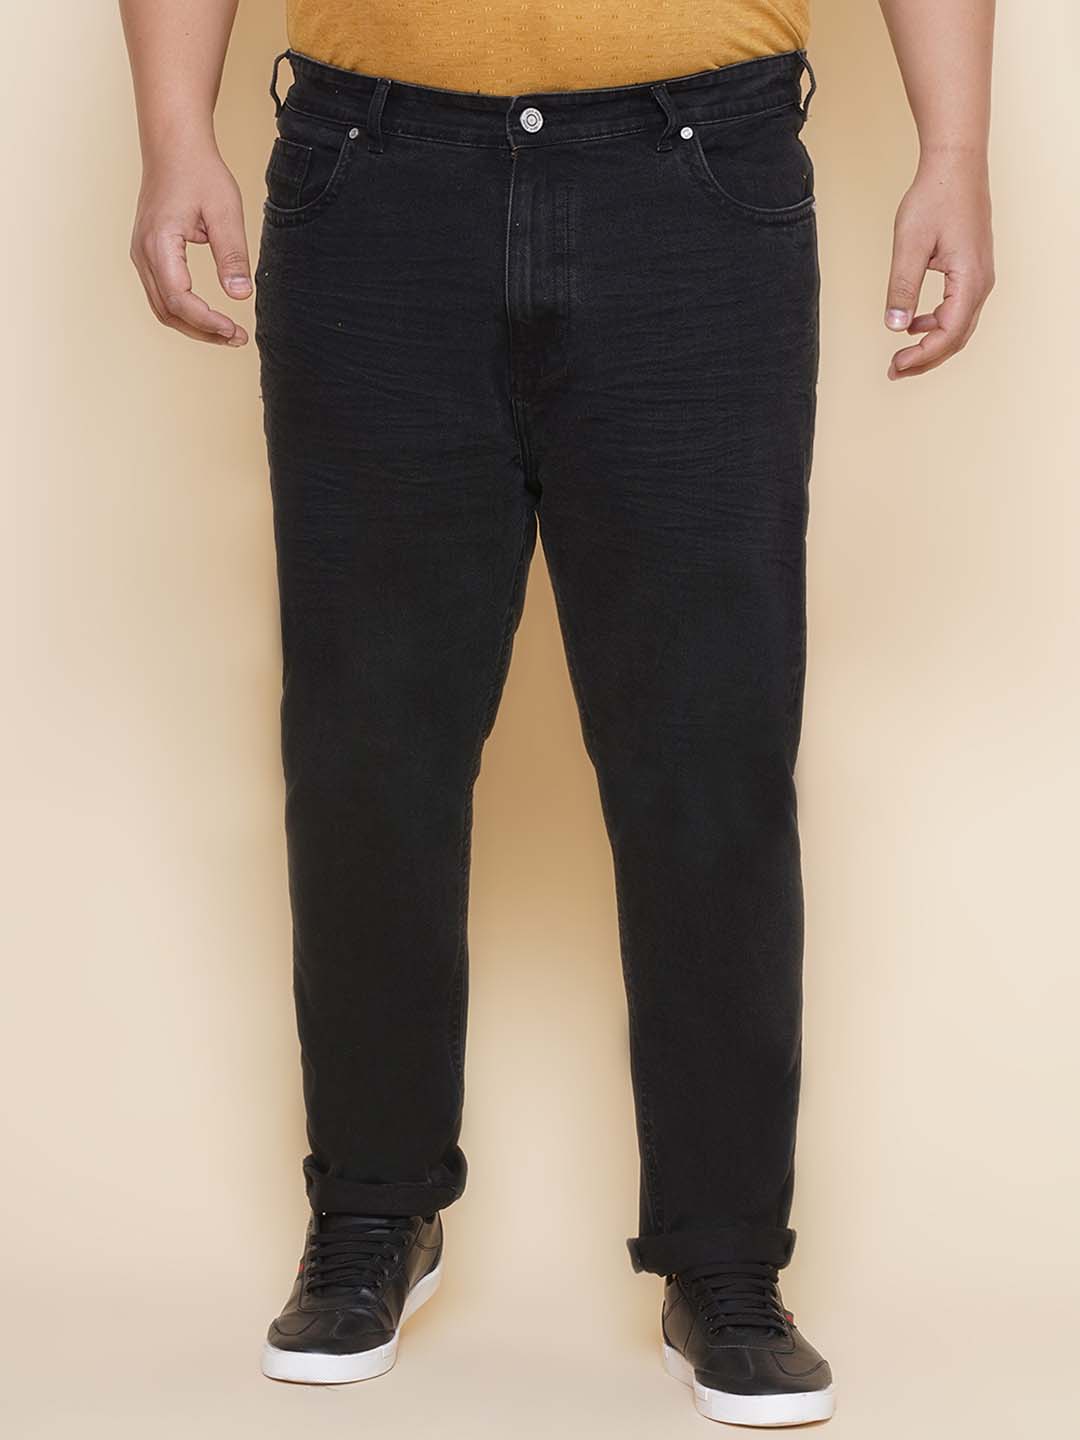 bottomwear/jeans/JPJ27104/jpj27104-1.jpg